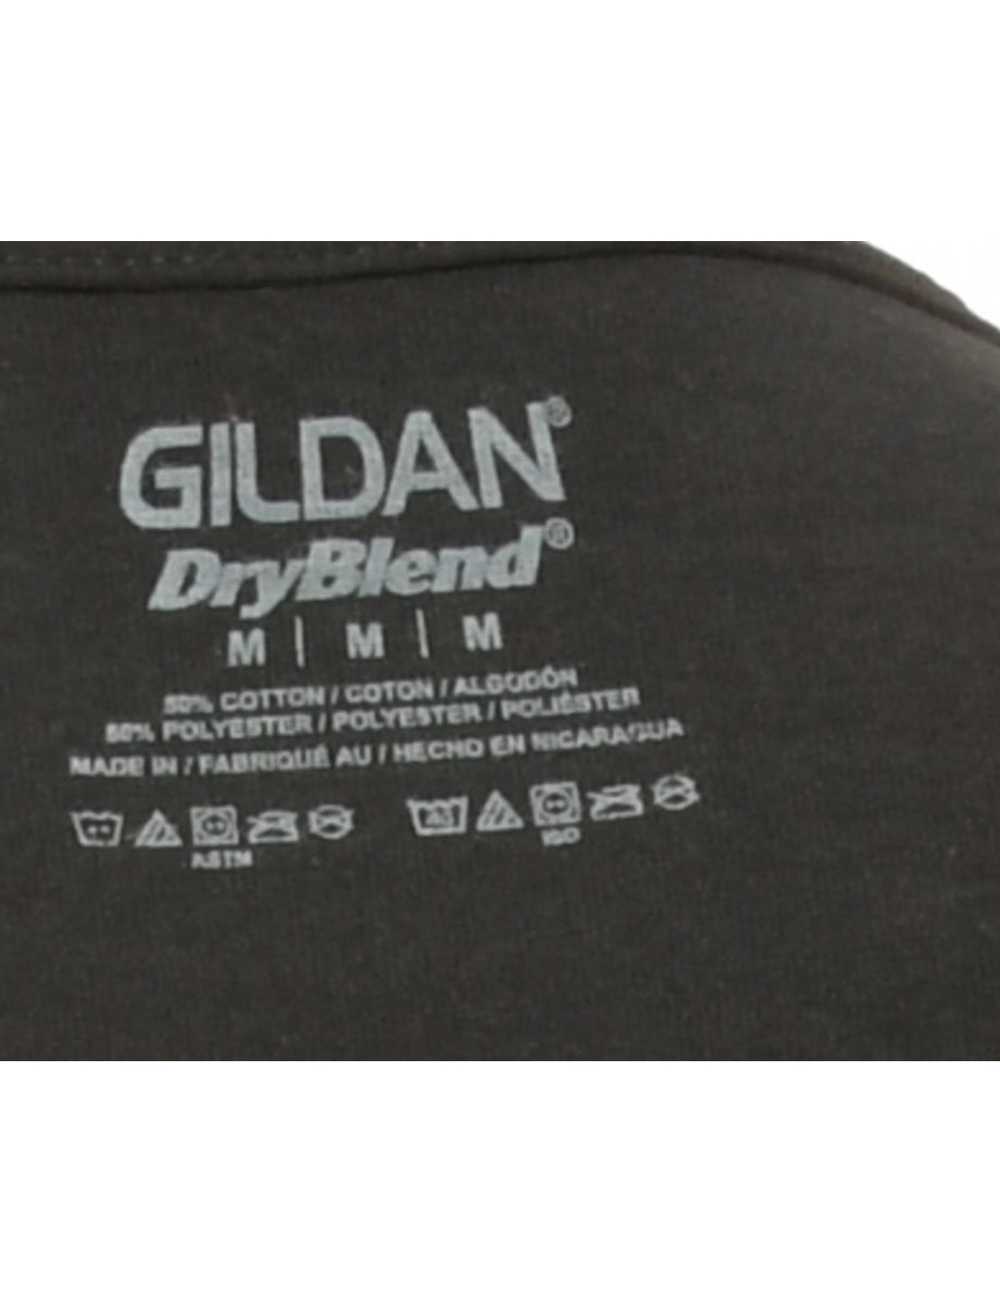 Black Gildan Printed T-shirt - M - image 4